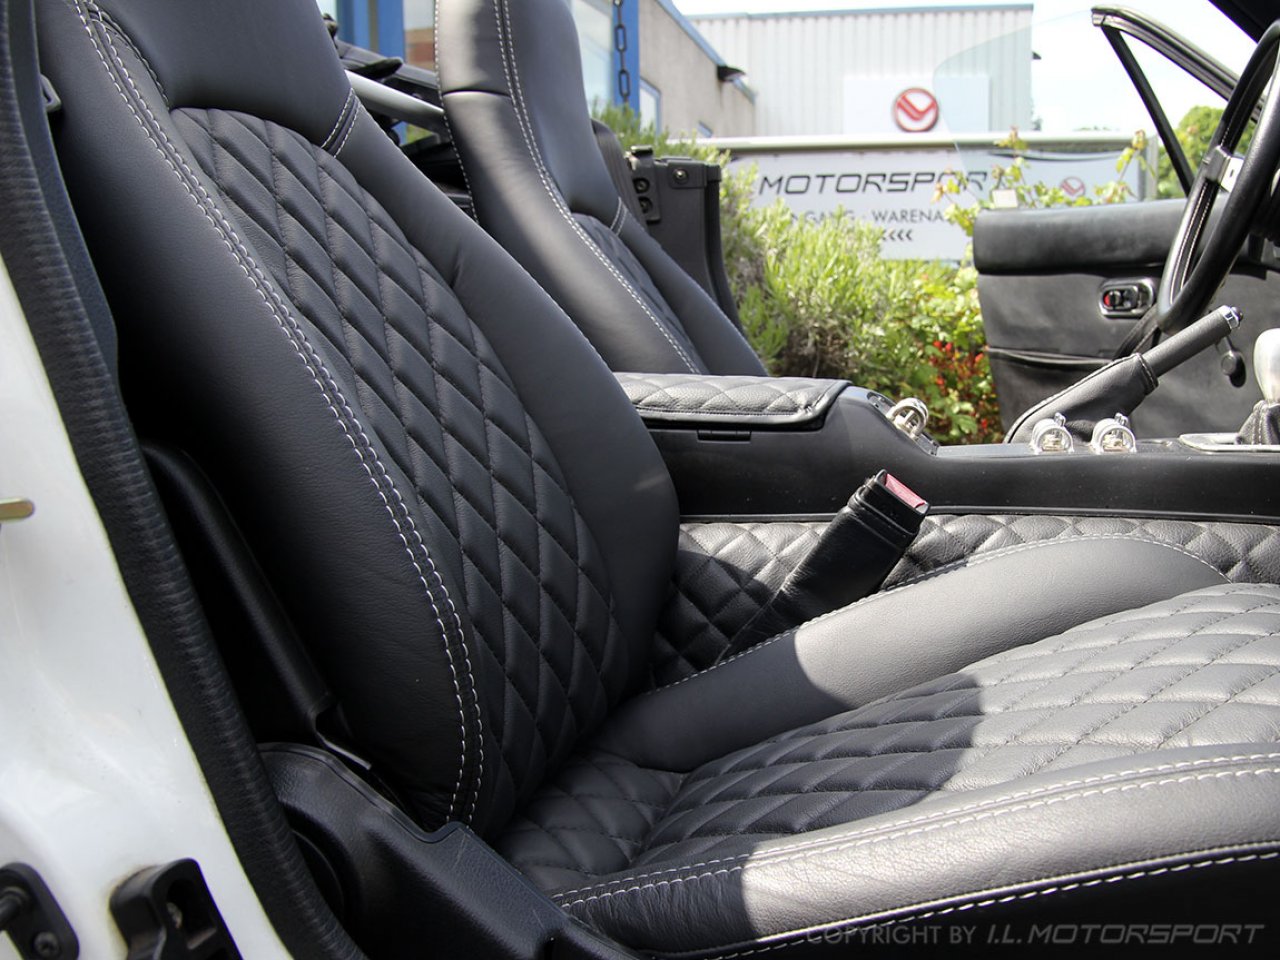 HA Handels GmbH Autositzbezüge passend für Mazda MX-5 in Schwarz Rot Royal  Auto-Sitzbezüge Vordersitze Auto-Sitzbezug Universal Set Fahrersitz und